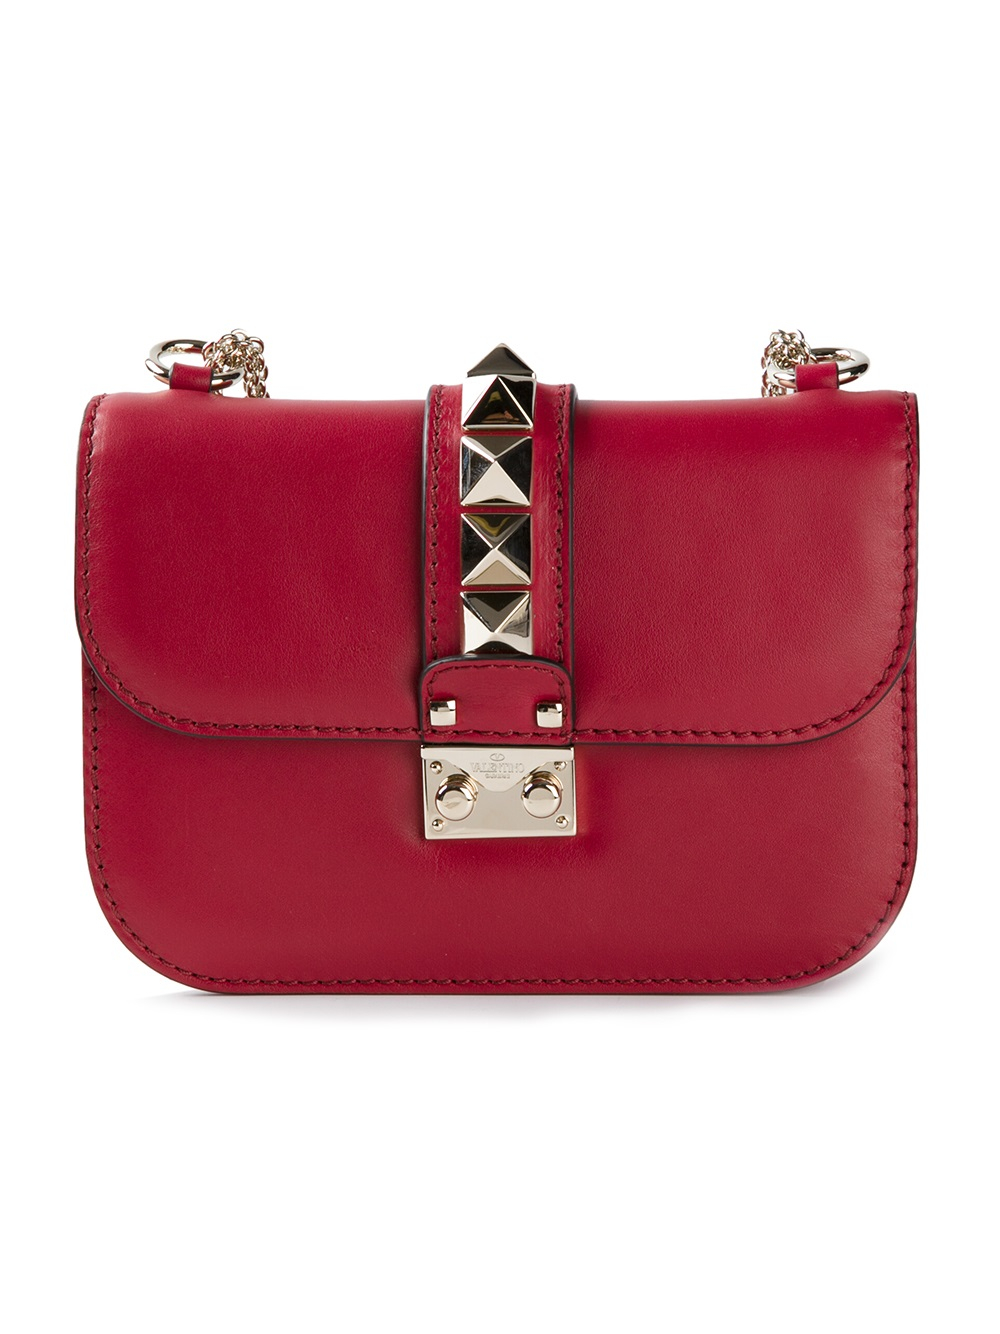 Lyst - Valentino Rockstud Shoulder Bag in Red